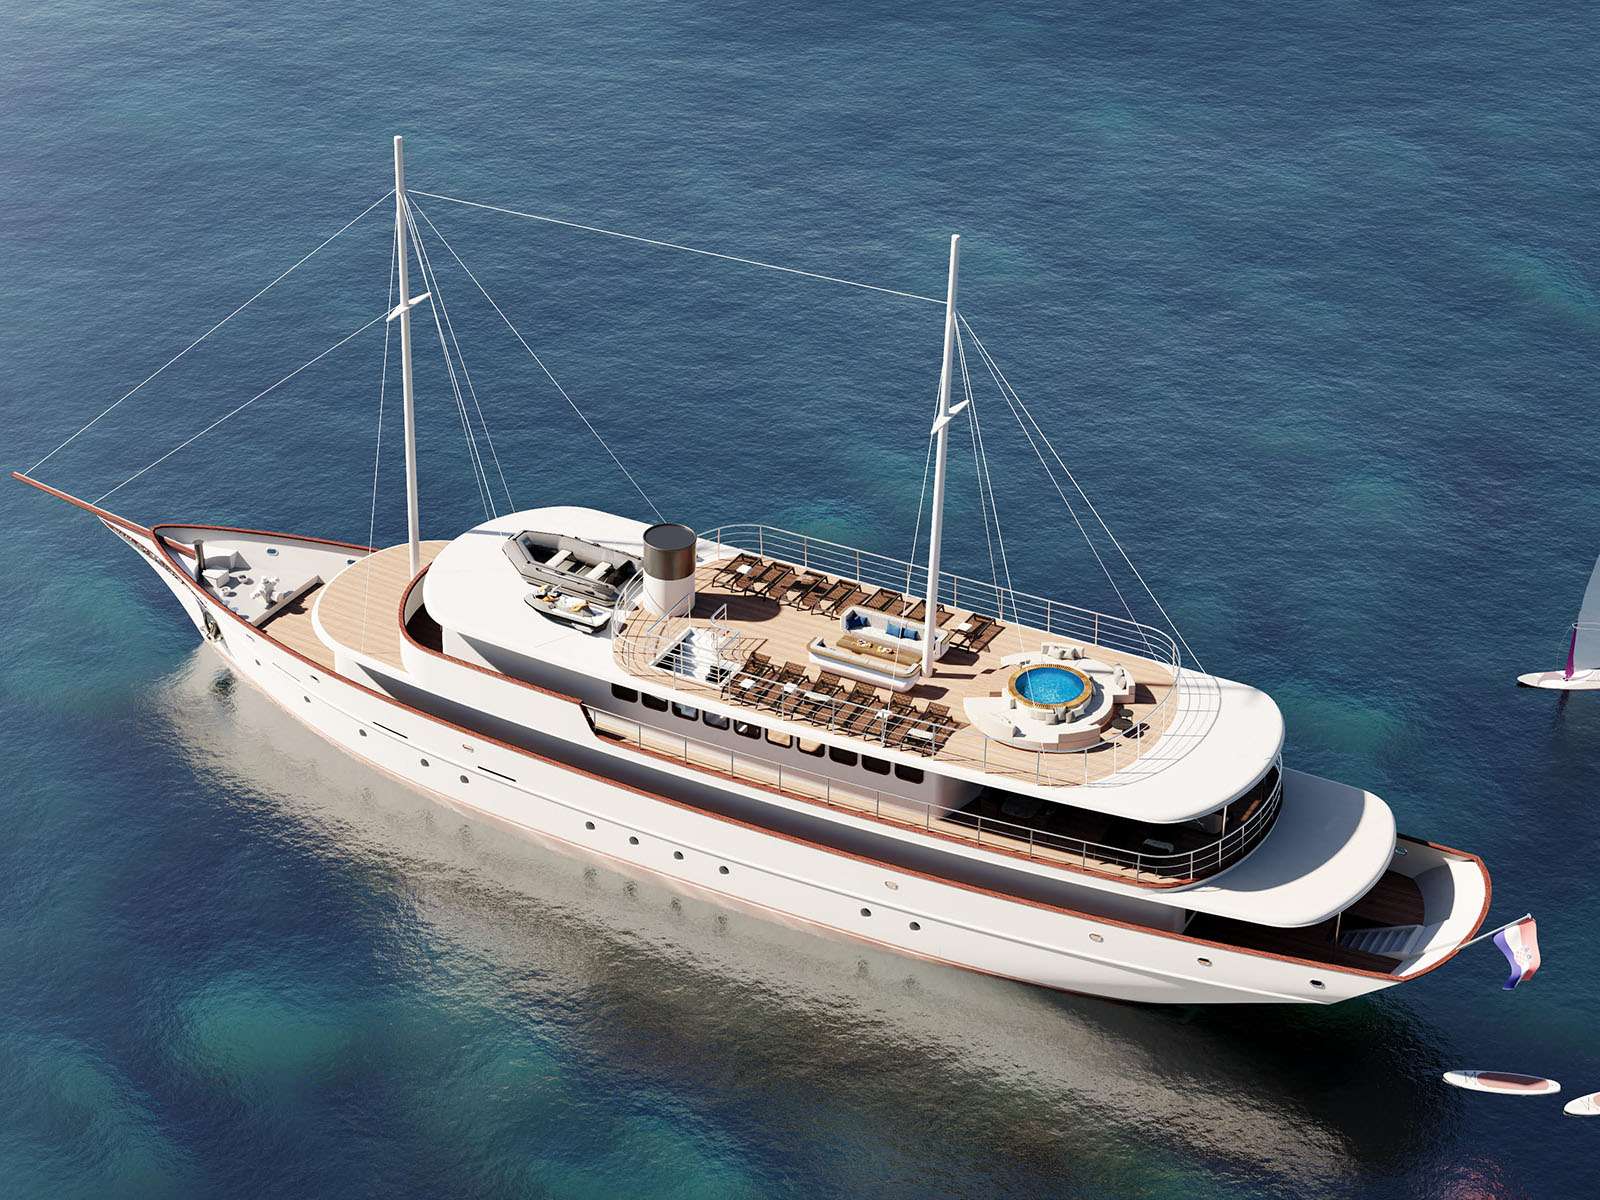 Bellezza - Yacht Charter Brbinj & Boat hire in Croatia 2